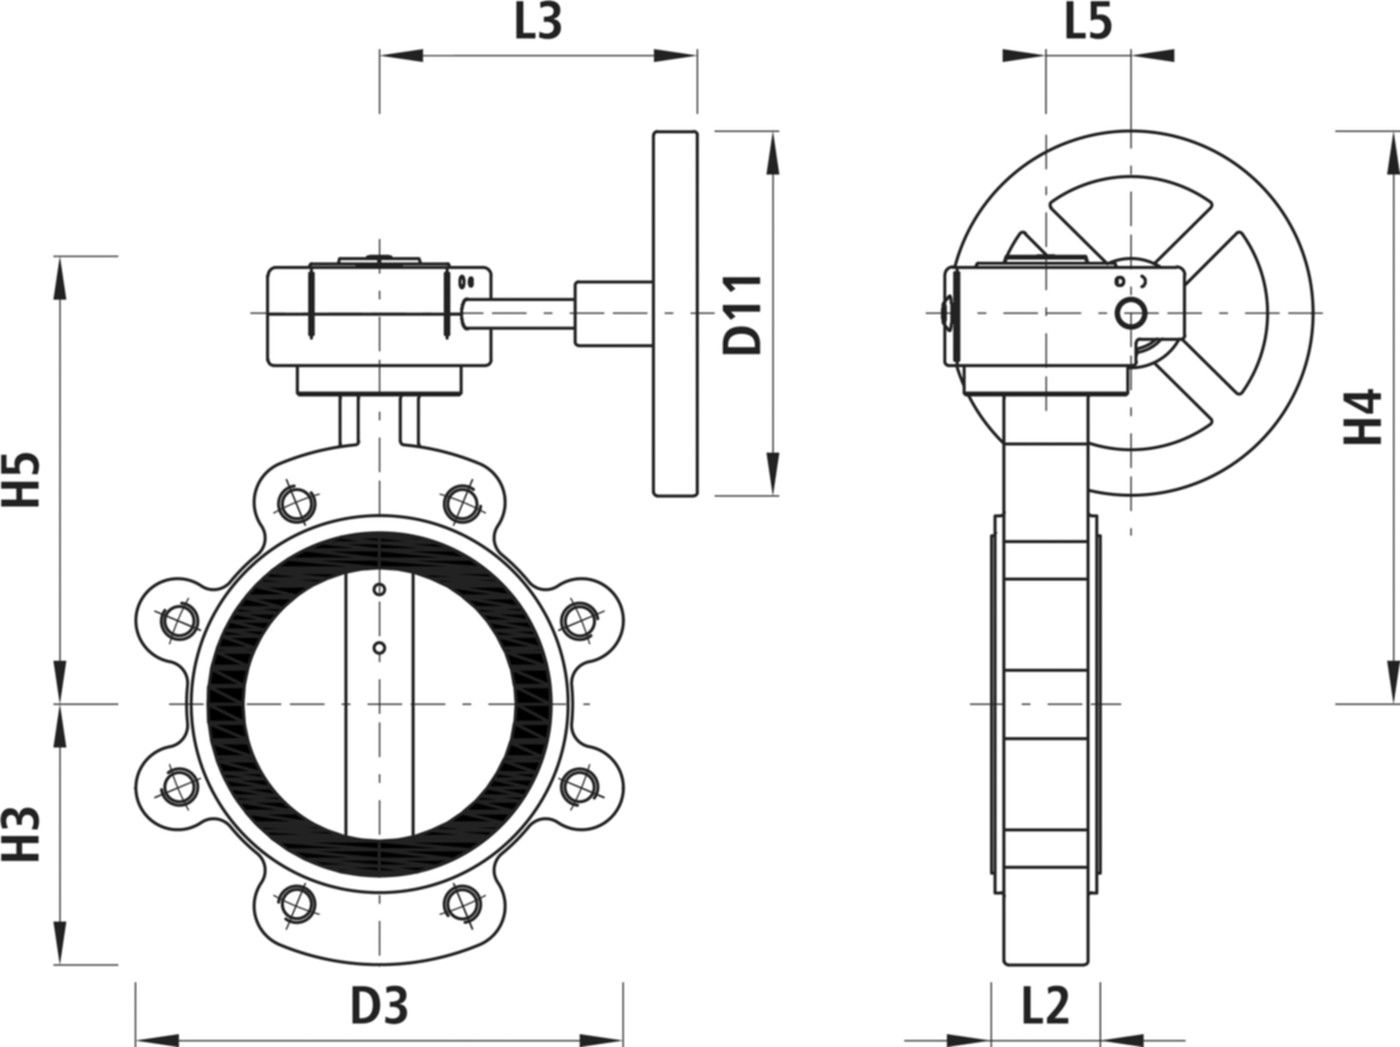 Absperrklappe mit Getriebe Typ LT 9937 für Gas DN 200 PN 16 - Hawle Absperrklappen